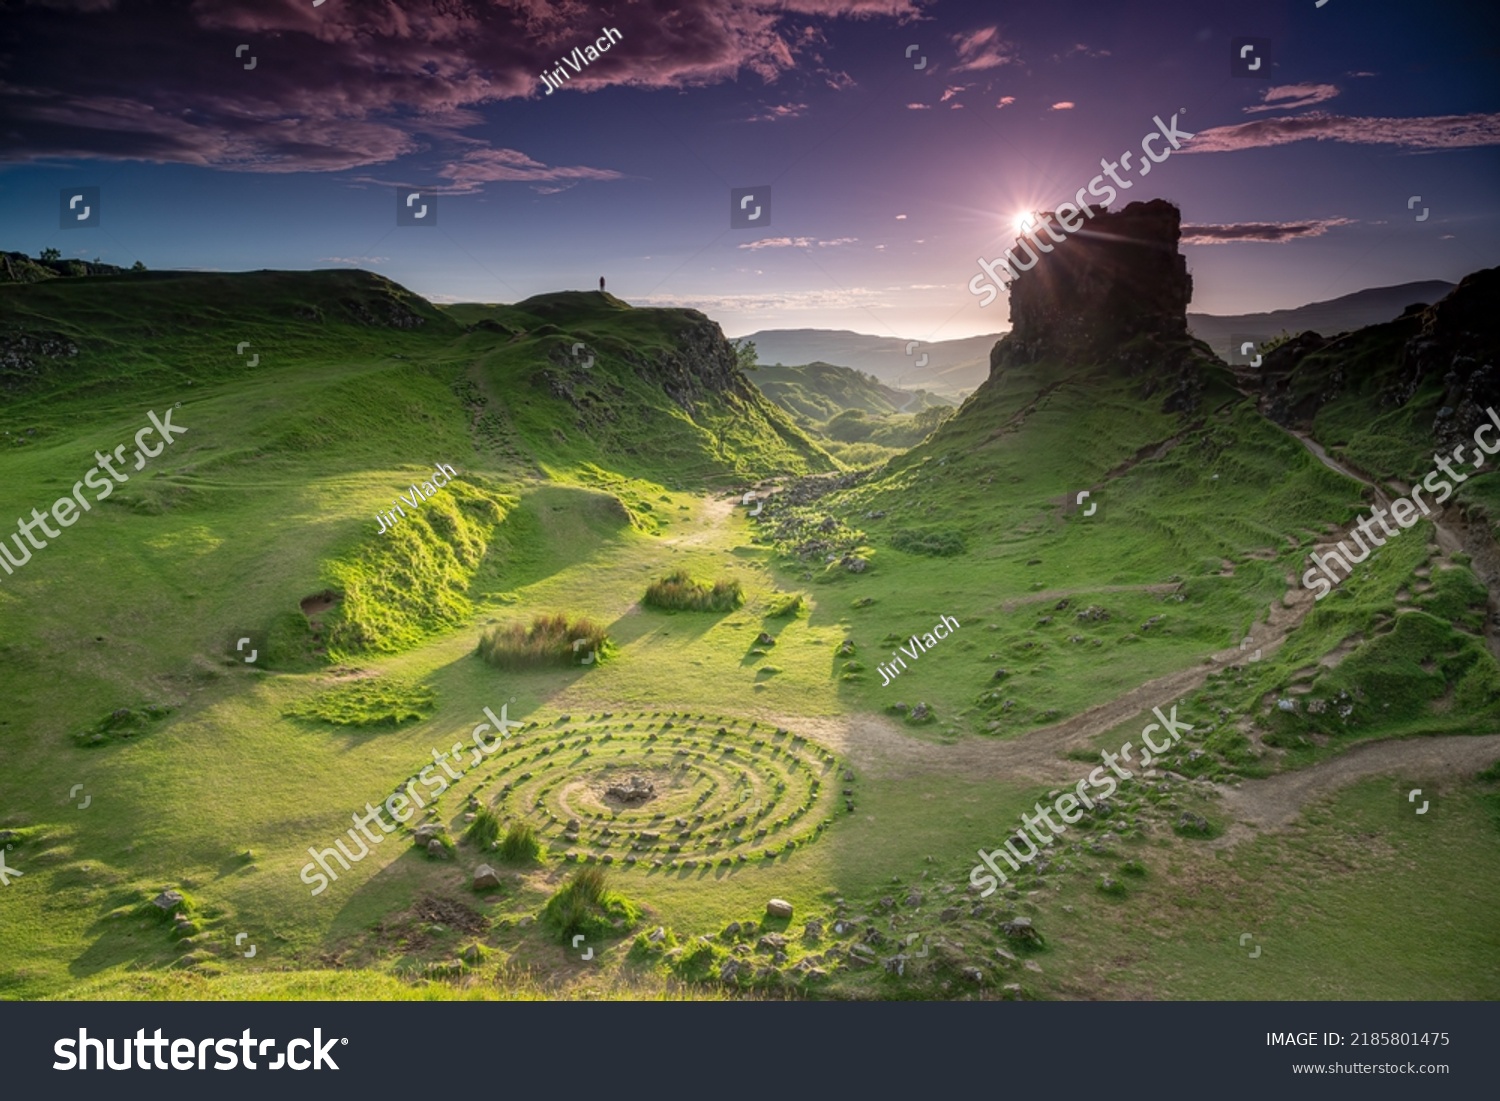 Fairy-tale landscape, The Fairy Glen, Isle of Skye, Scotland #2185801475